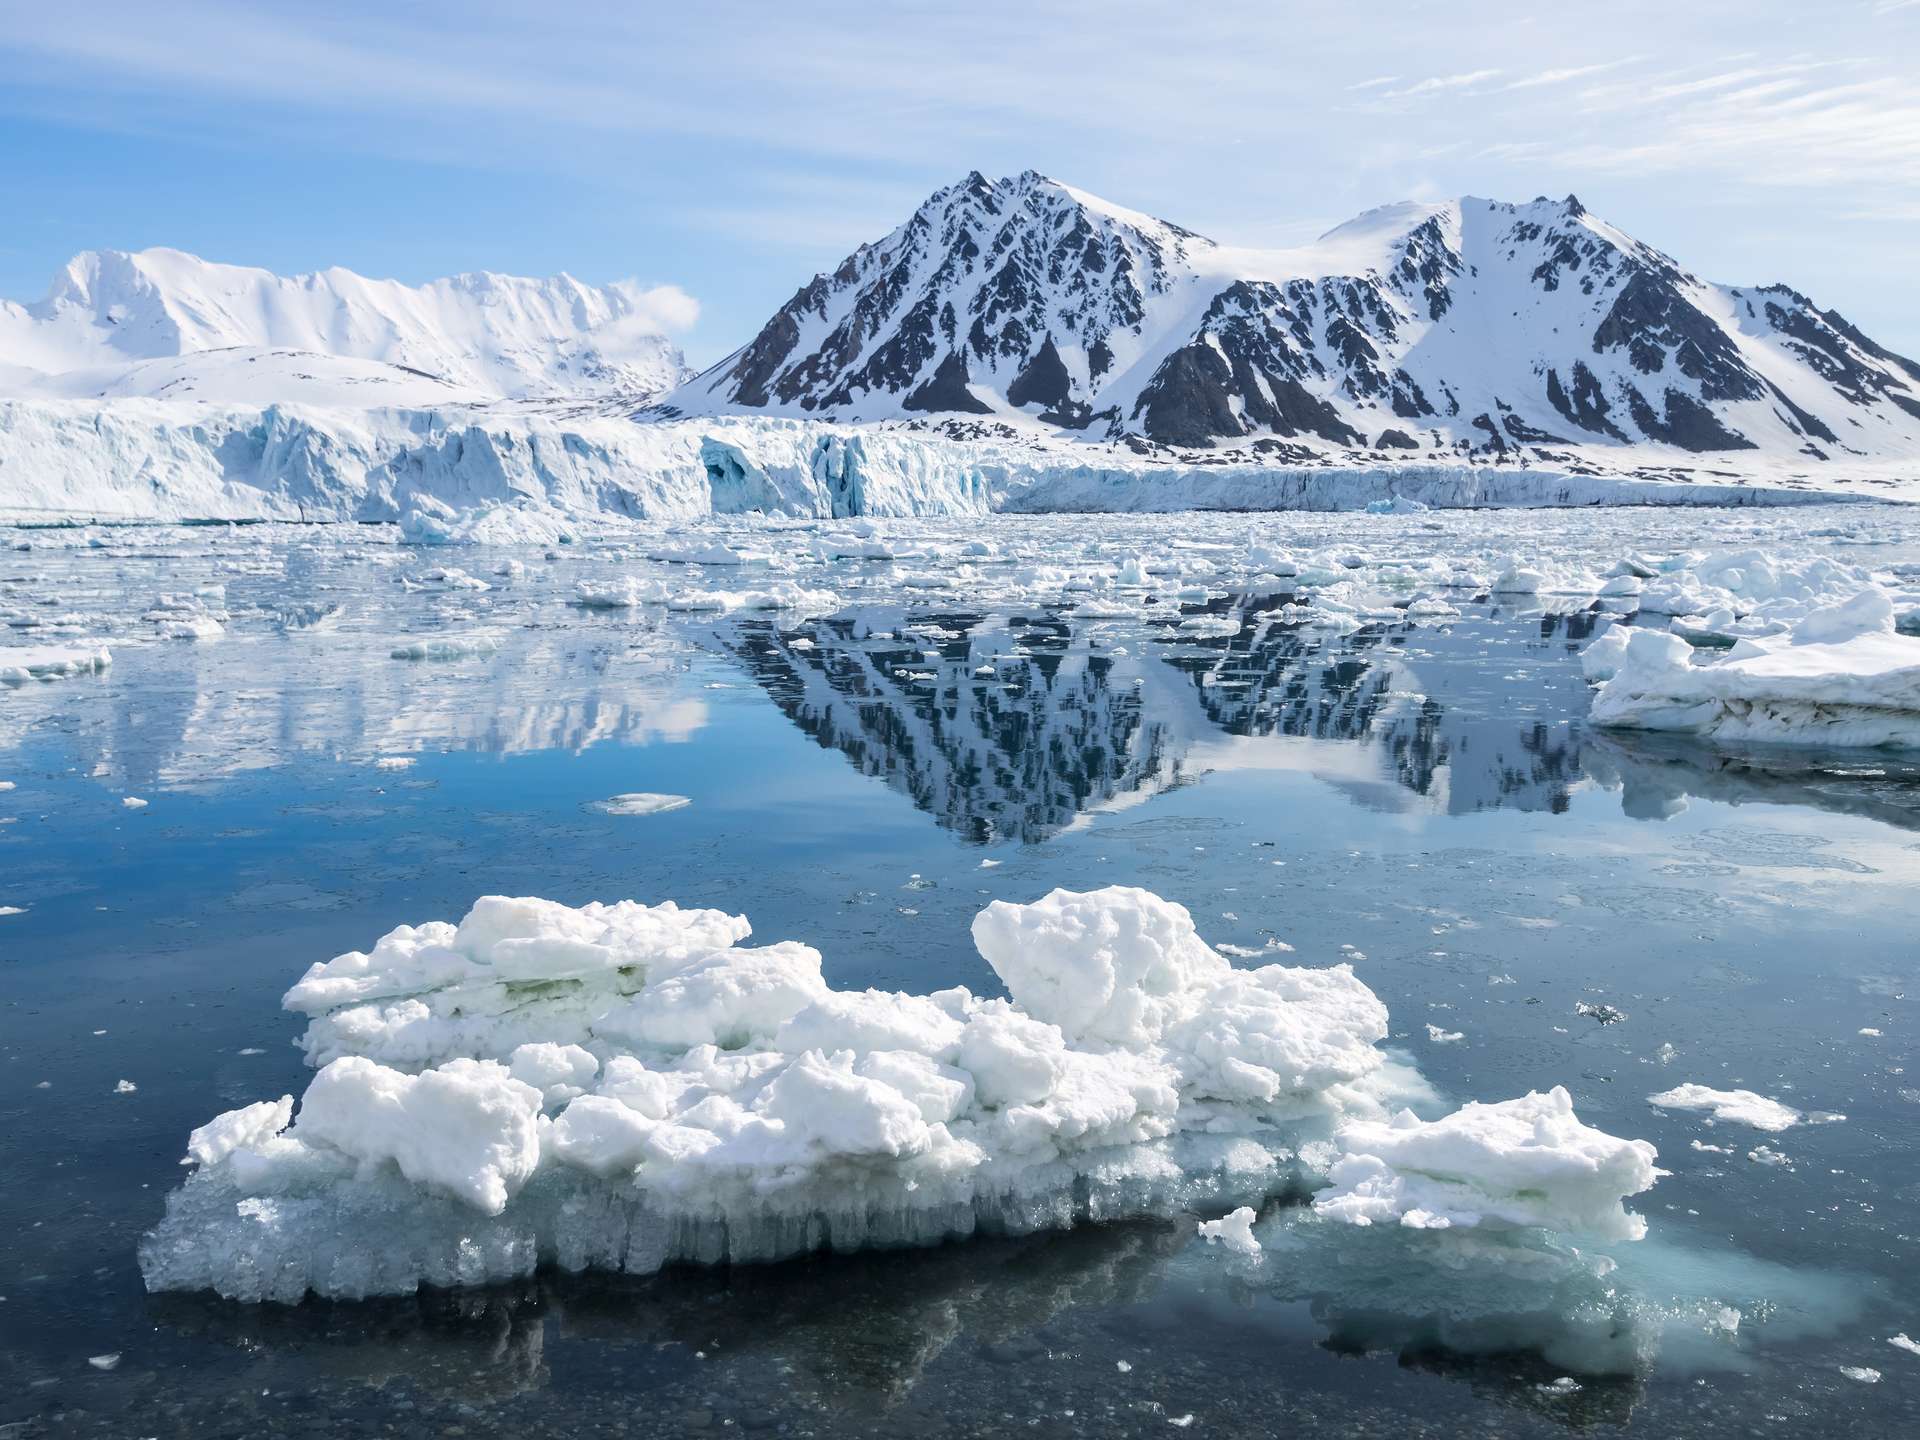 Le Groenland perd tellement de glace que de nouvelles îles surgissent !